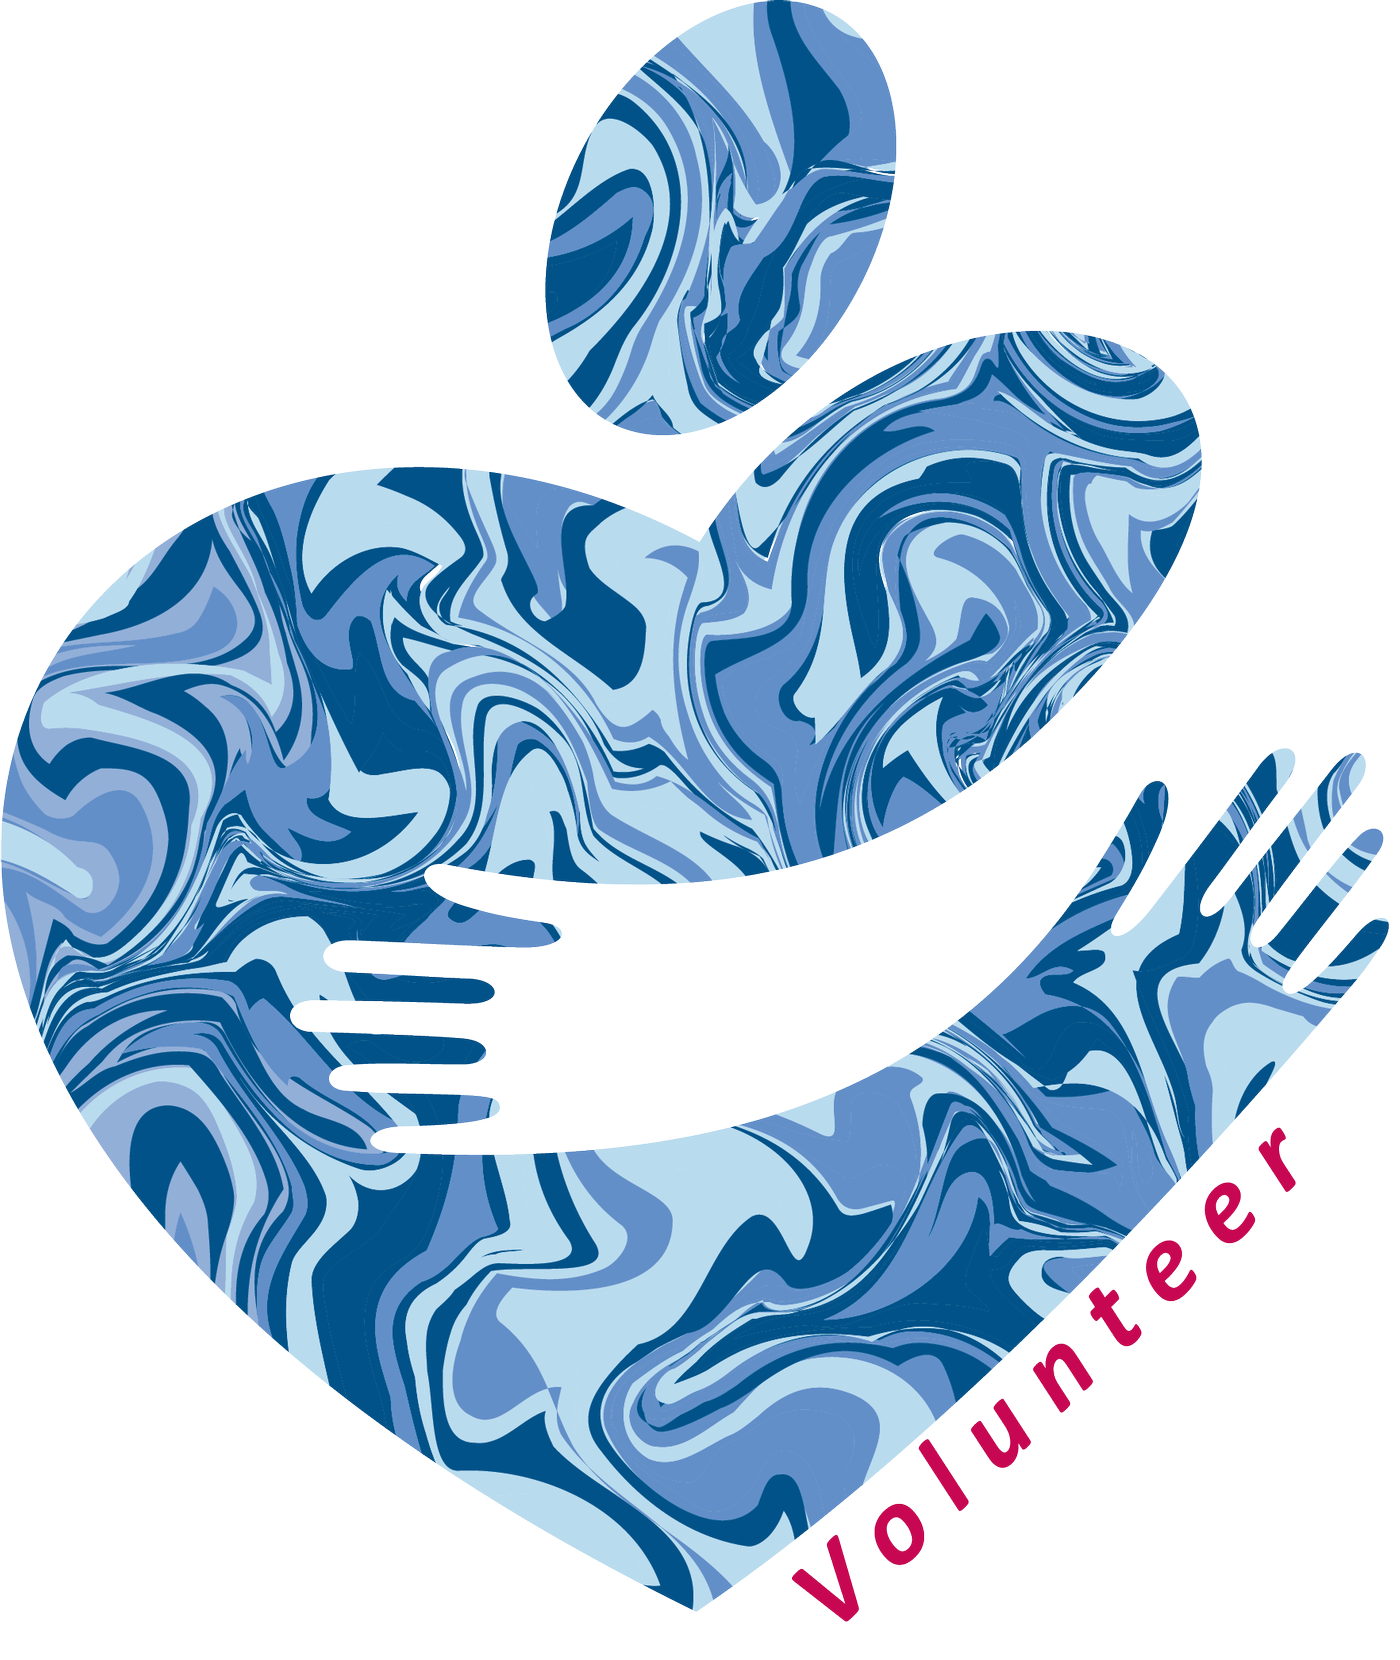 Huggy Heart Volunteer Logo with Link